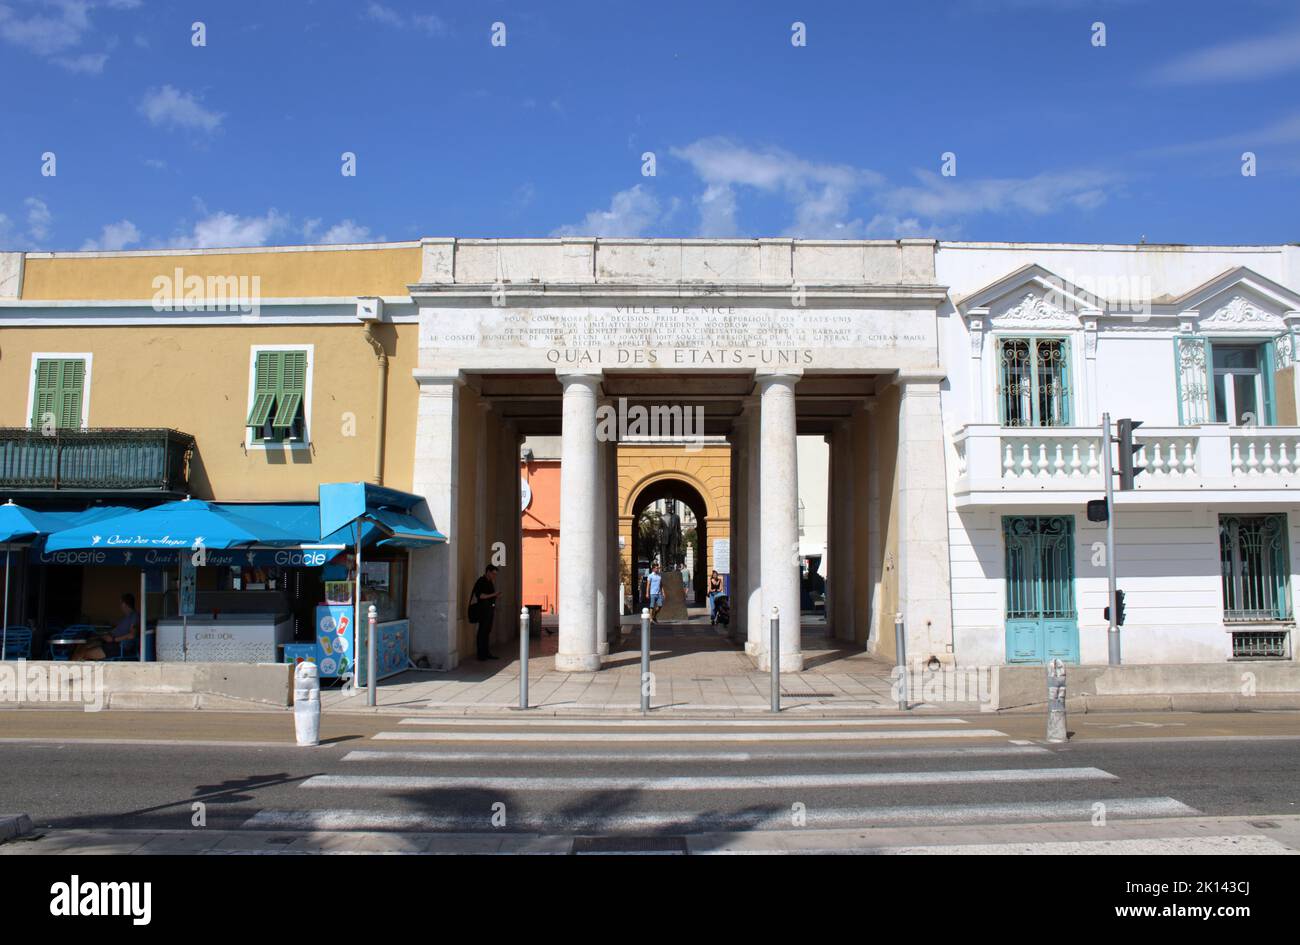 Vue sur les magnifiques bâtiments italianates du Quai des États-Unis situé sur la Promenade des Anglais sur la Côte d'Azur à Nice. Banque D'Images